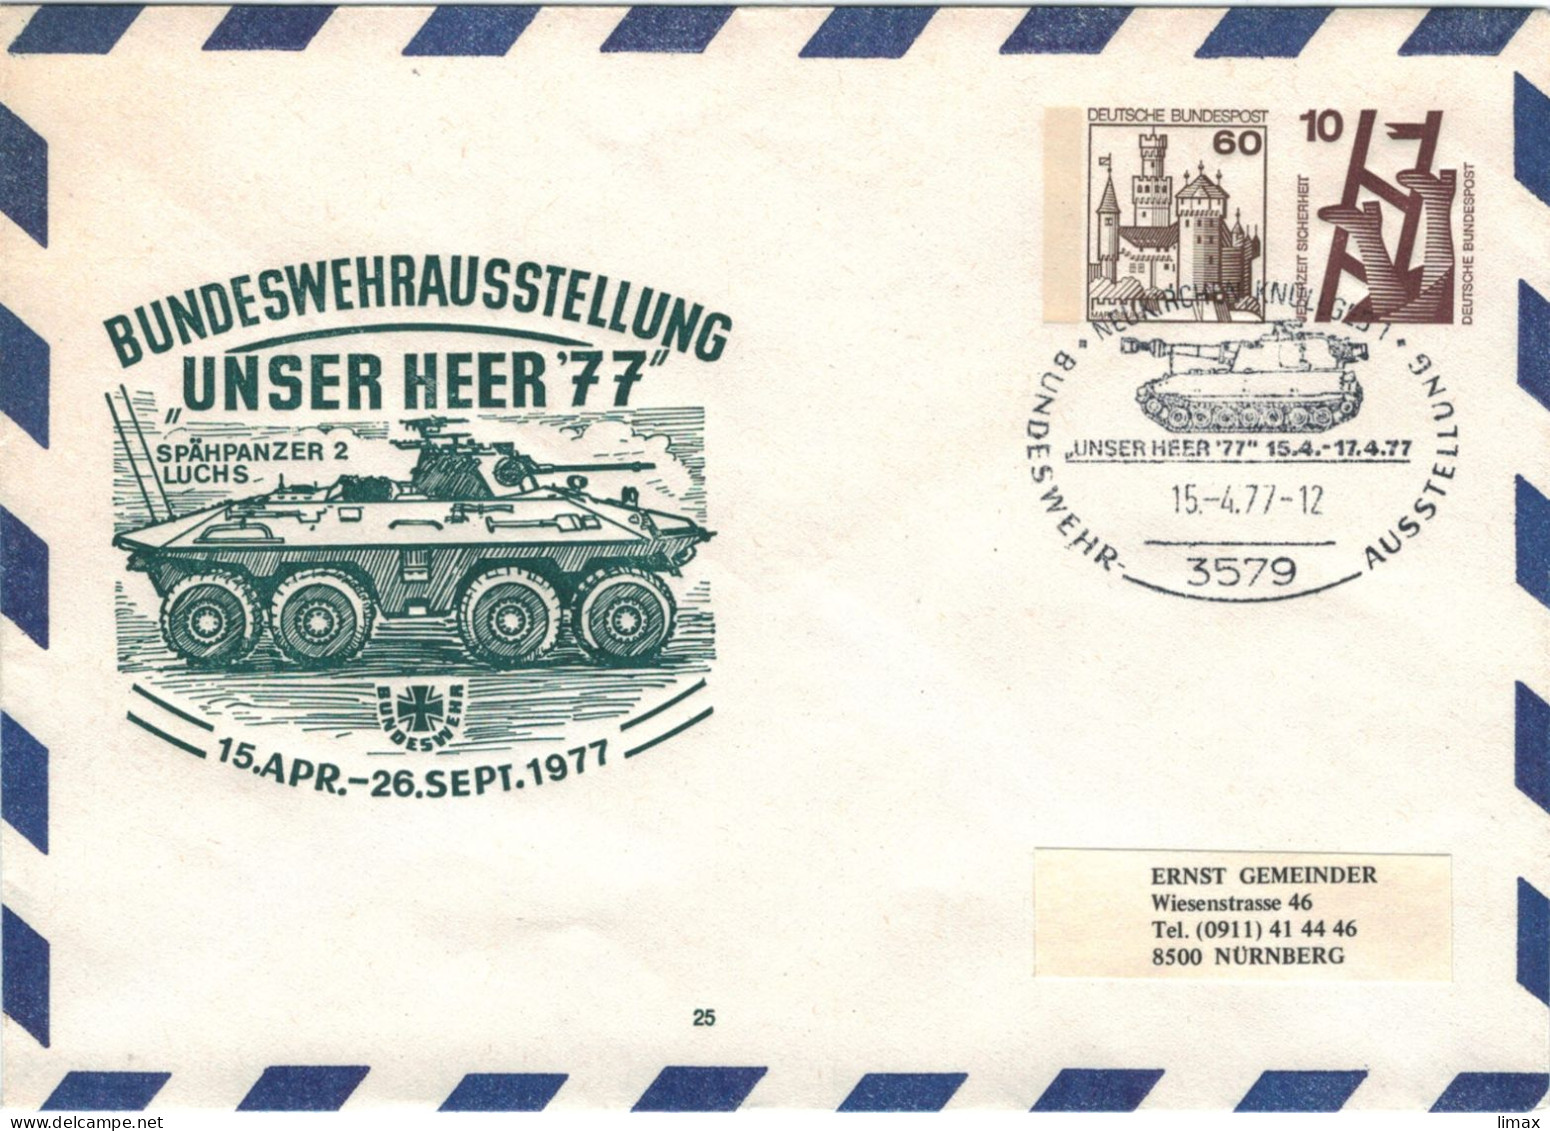 Ganzsache Bundeswehrausstellung Unser Heer '77 Spähpanzer Luchs Neukirchen Marksburg - Jederzeit Sicherheit - Private Covers - Used